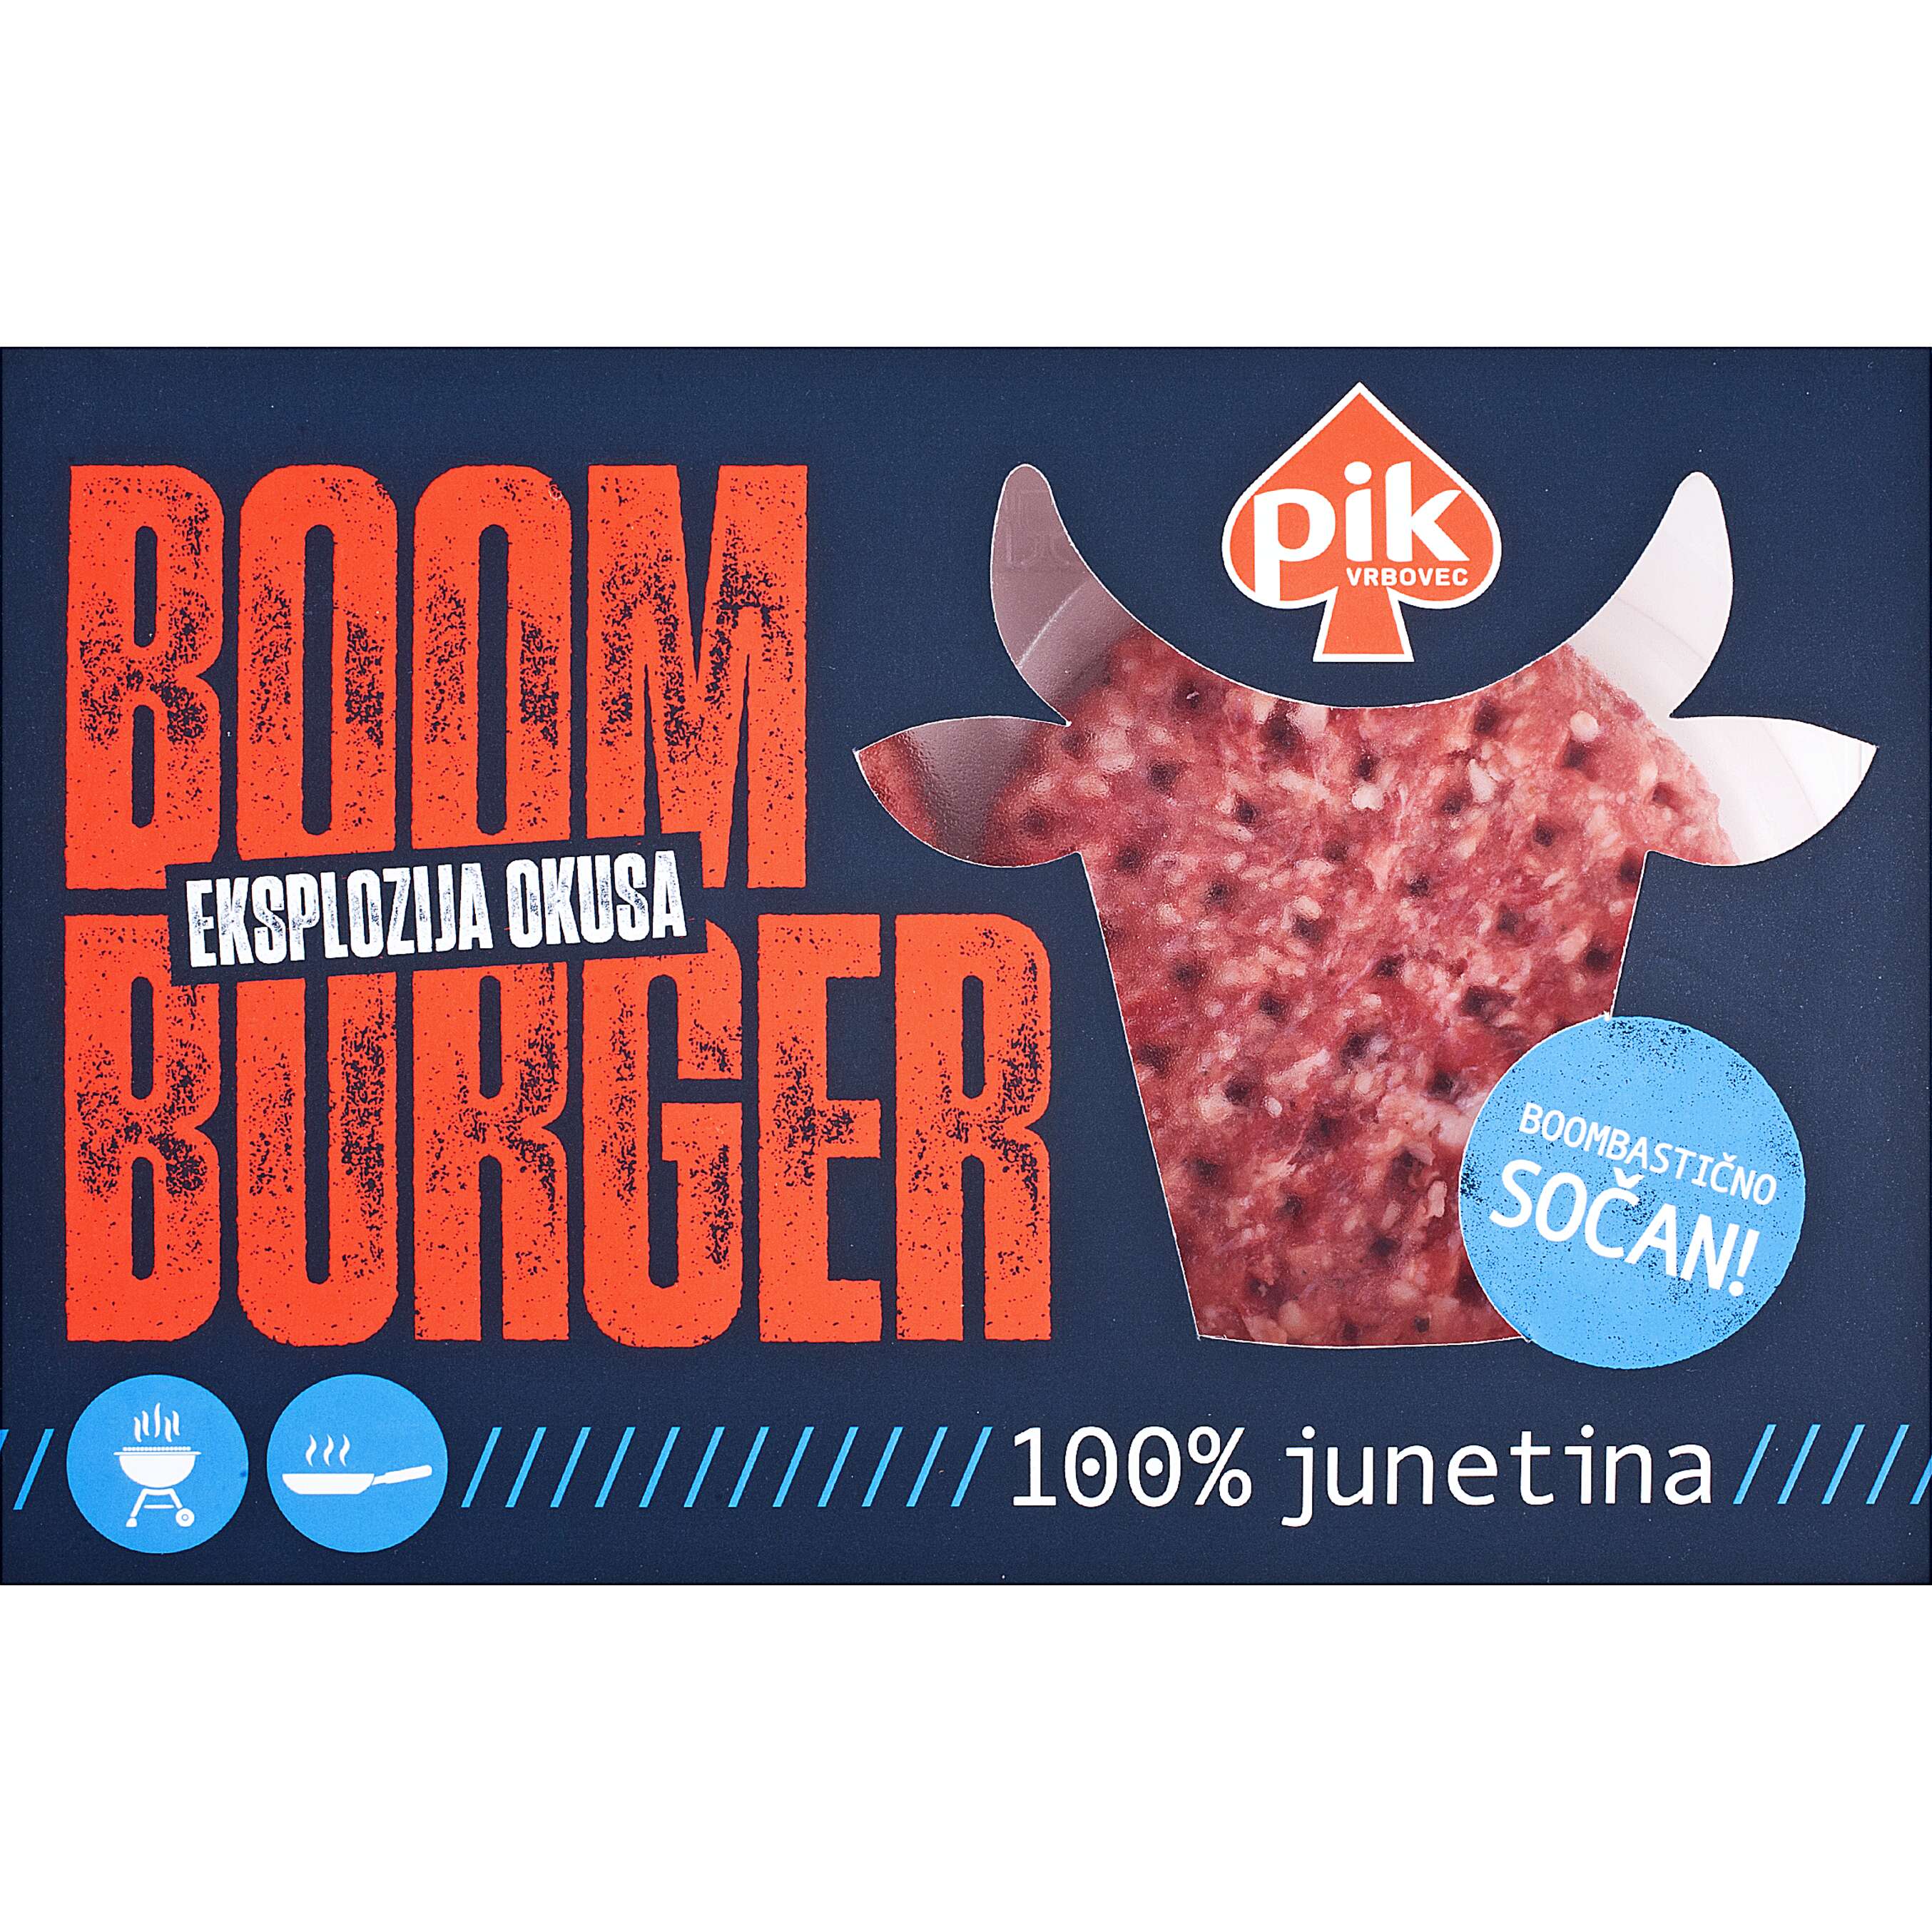 Fotografija ponude PIK Boom burger